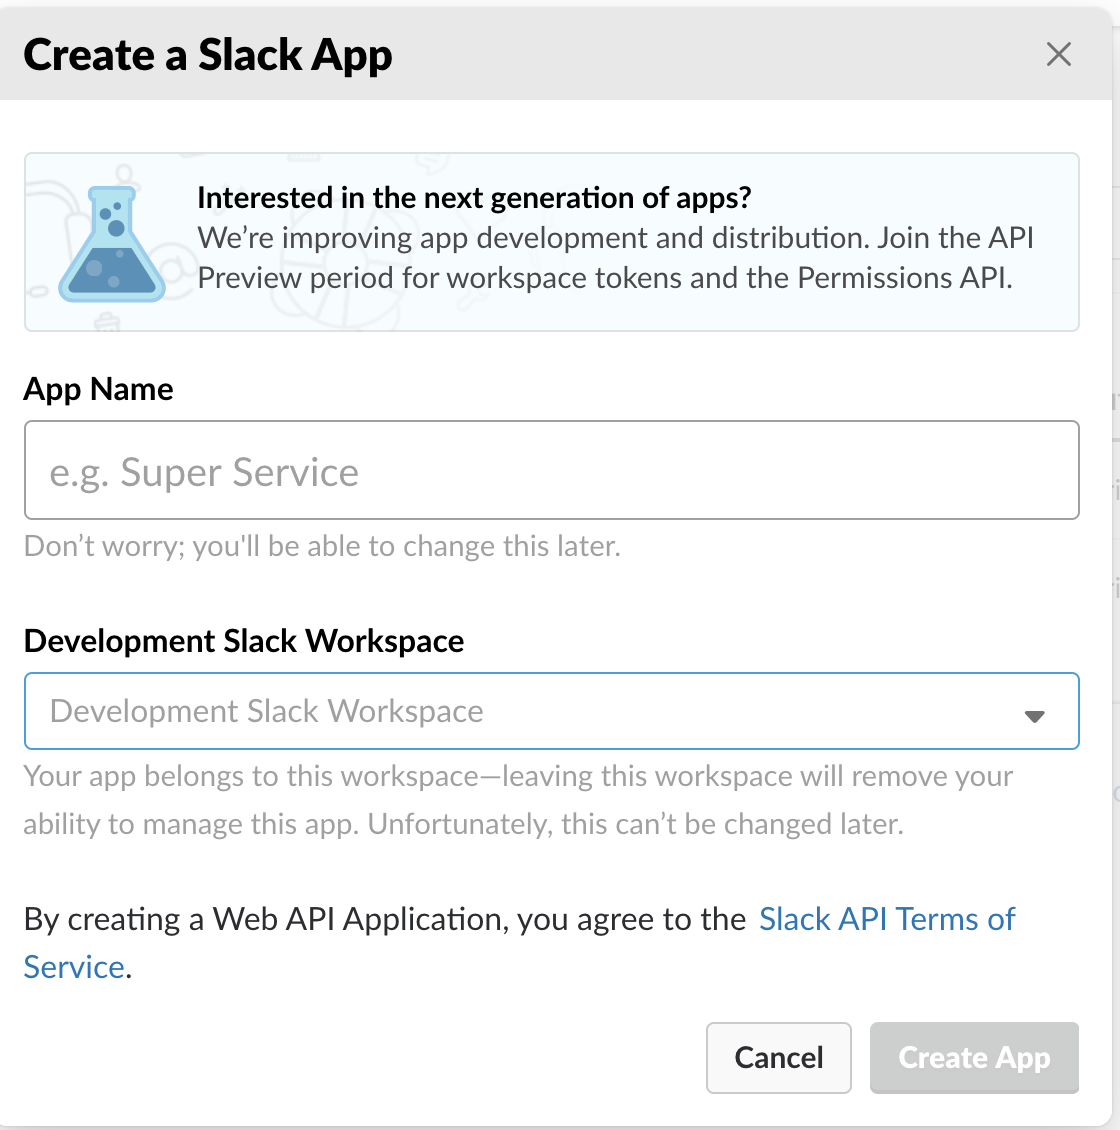 Dialog stepping through creating a Slack App